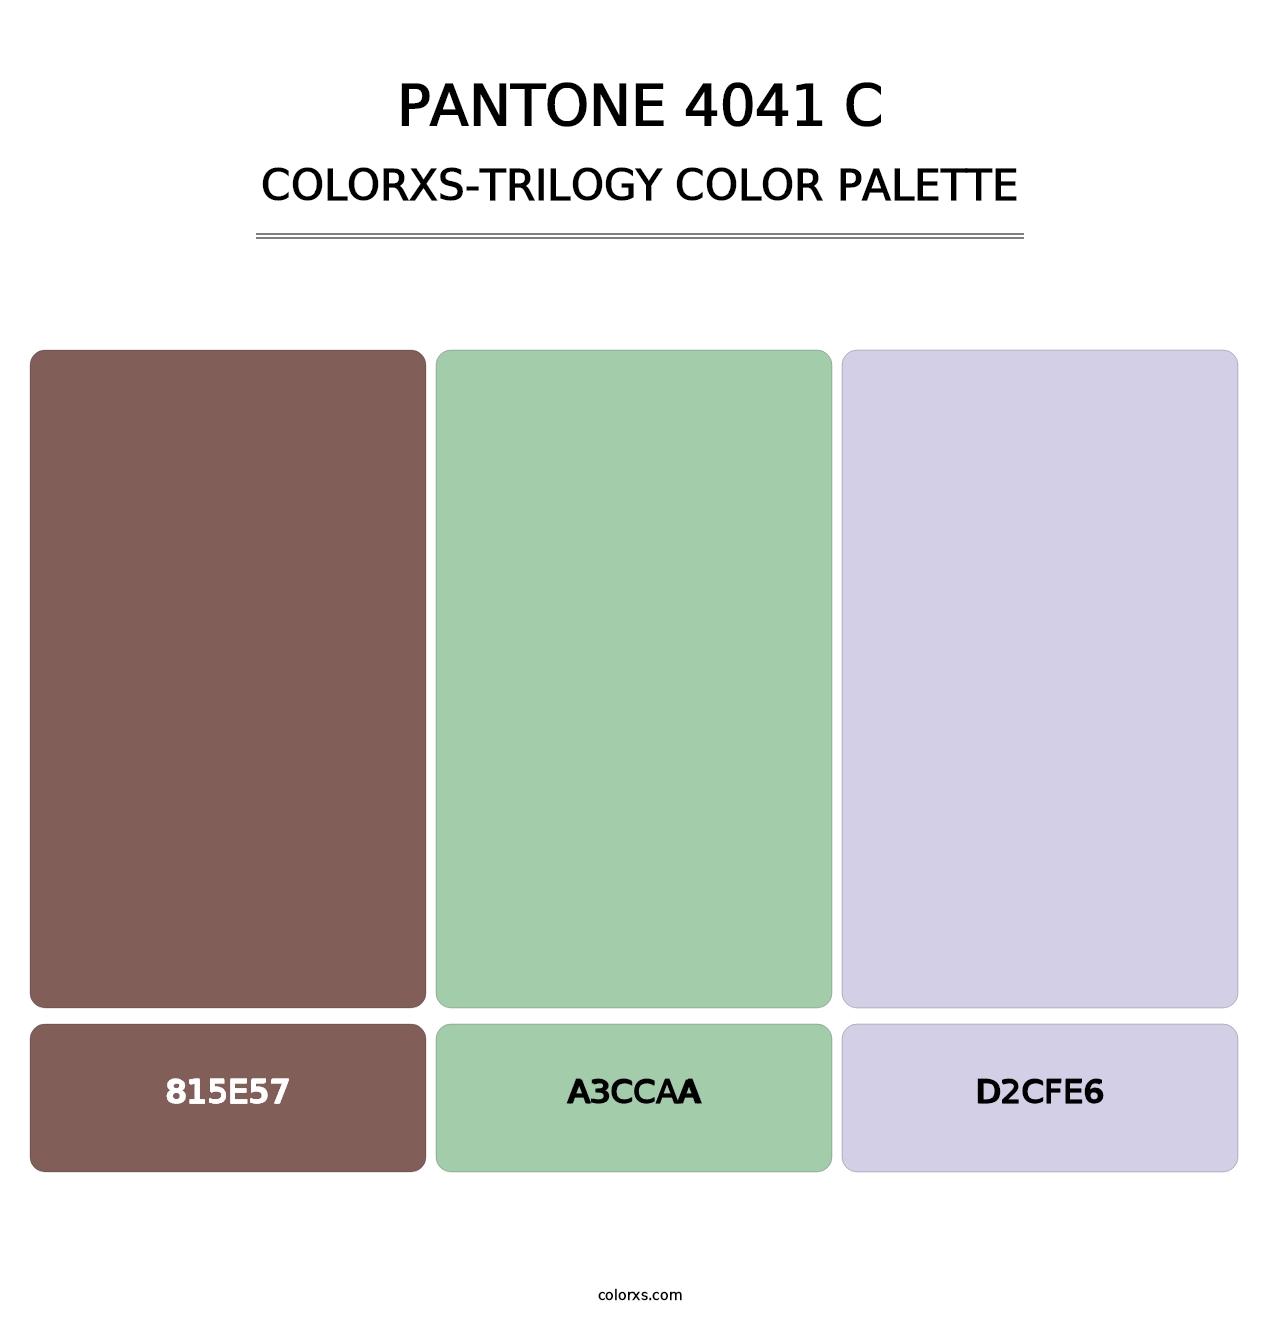 PANTONE 4041 C - Colorxs Trilogy Palette